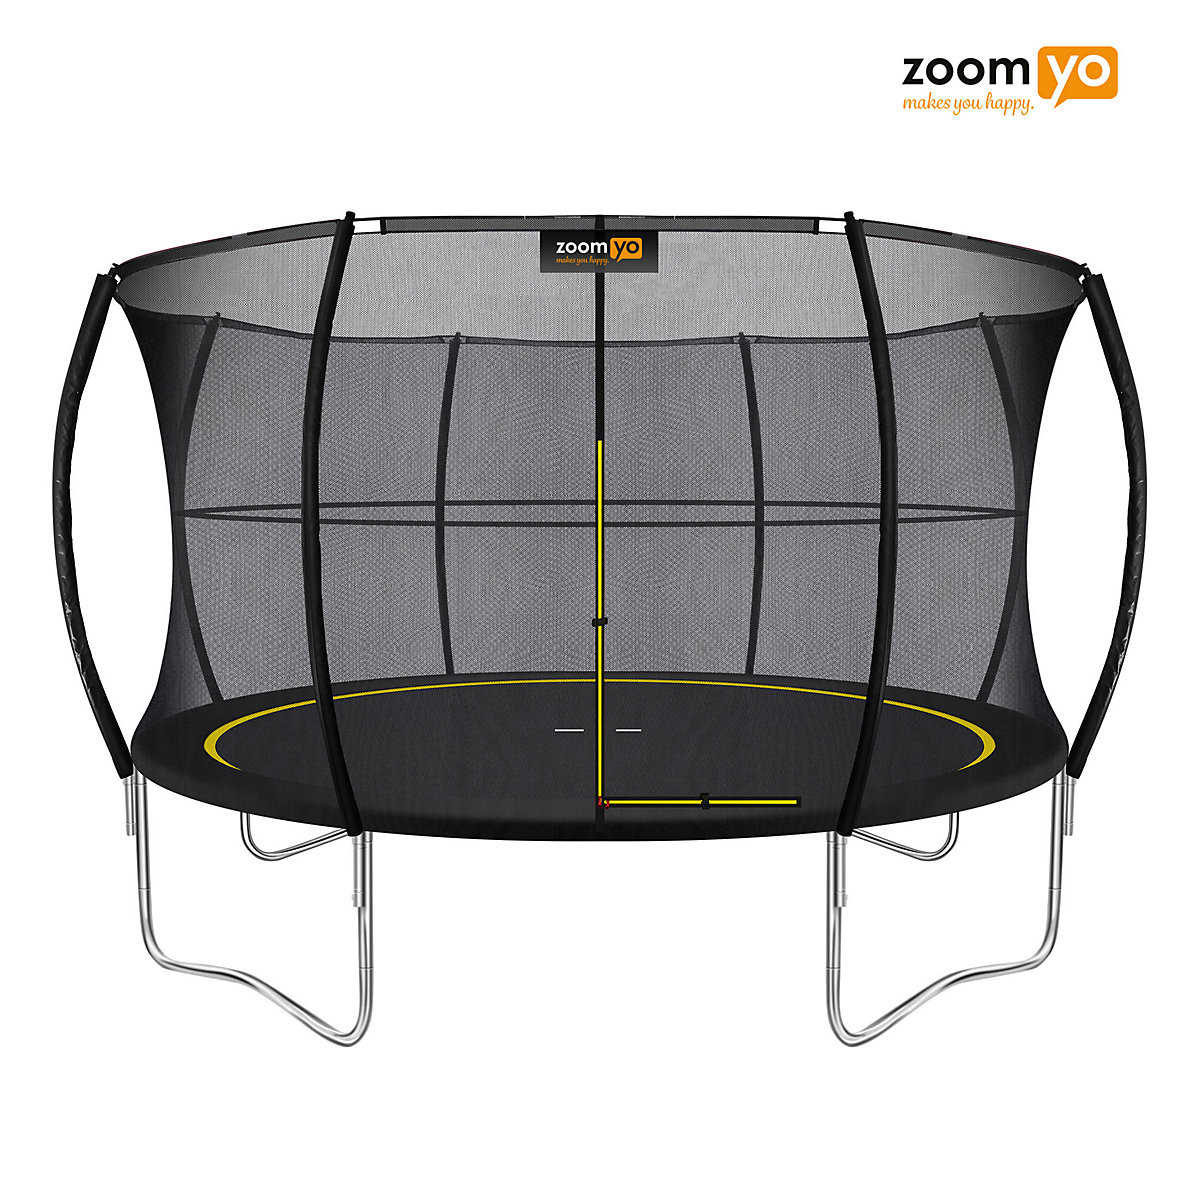 zoomyo Garten Trampolin Professional federlos Durchmesser 366cm inklusive Sicherheitsnetz